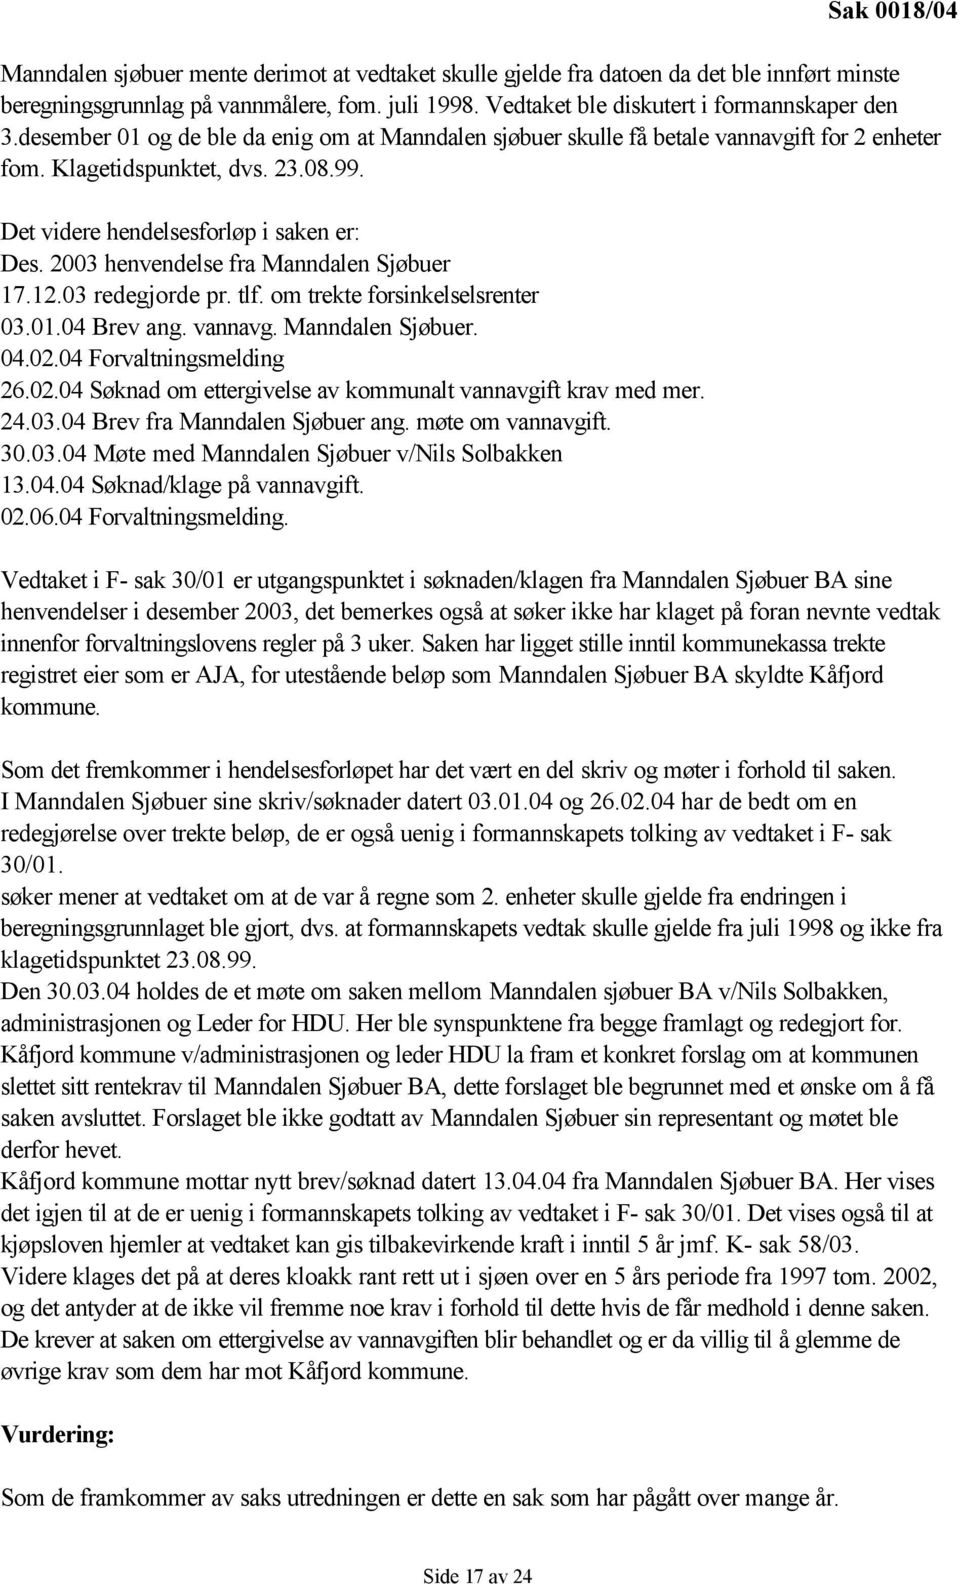 Det videre hendelsesforløp i saken er: Des. 2003 henvendelse fra Manndalen Sjøbuer 17.12.03 redegjorde pr. tlf. om trekte forsinkelselsrenter 03.01.04 Brev ang. vannavg. Manndalen Sjøbuer. 04.02.